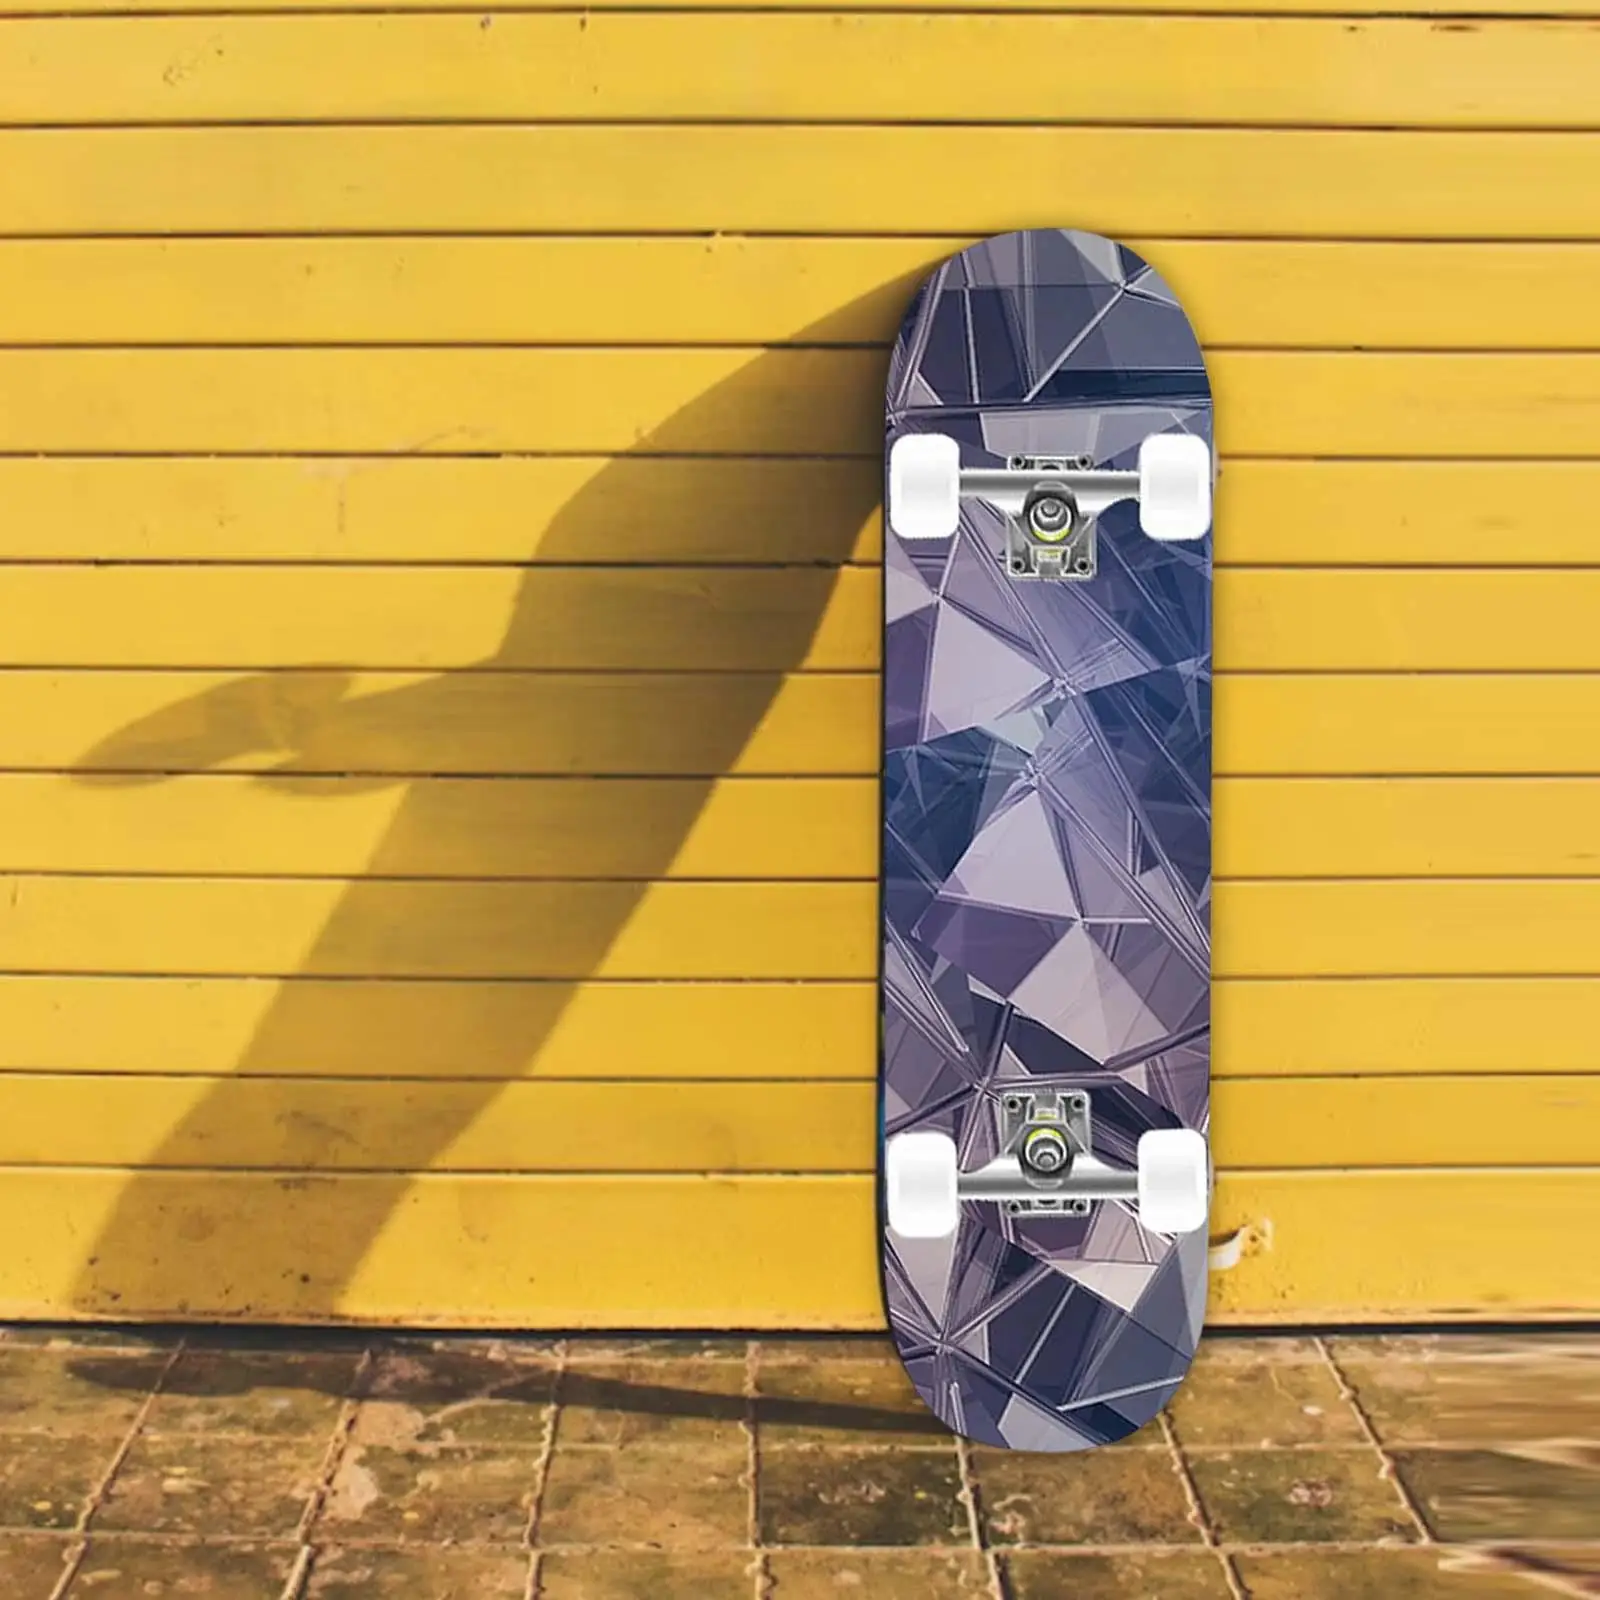 Skateboard Complete Double Kick Fully Bracket Longboard Wooden Deck Cruiser for Beginners Youth Girls Women Man Kids